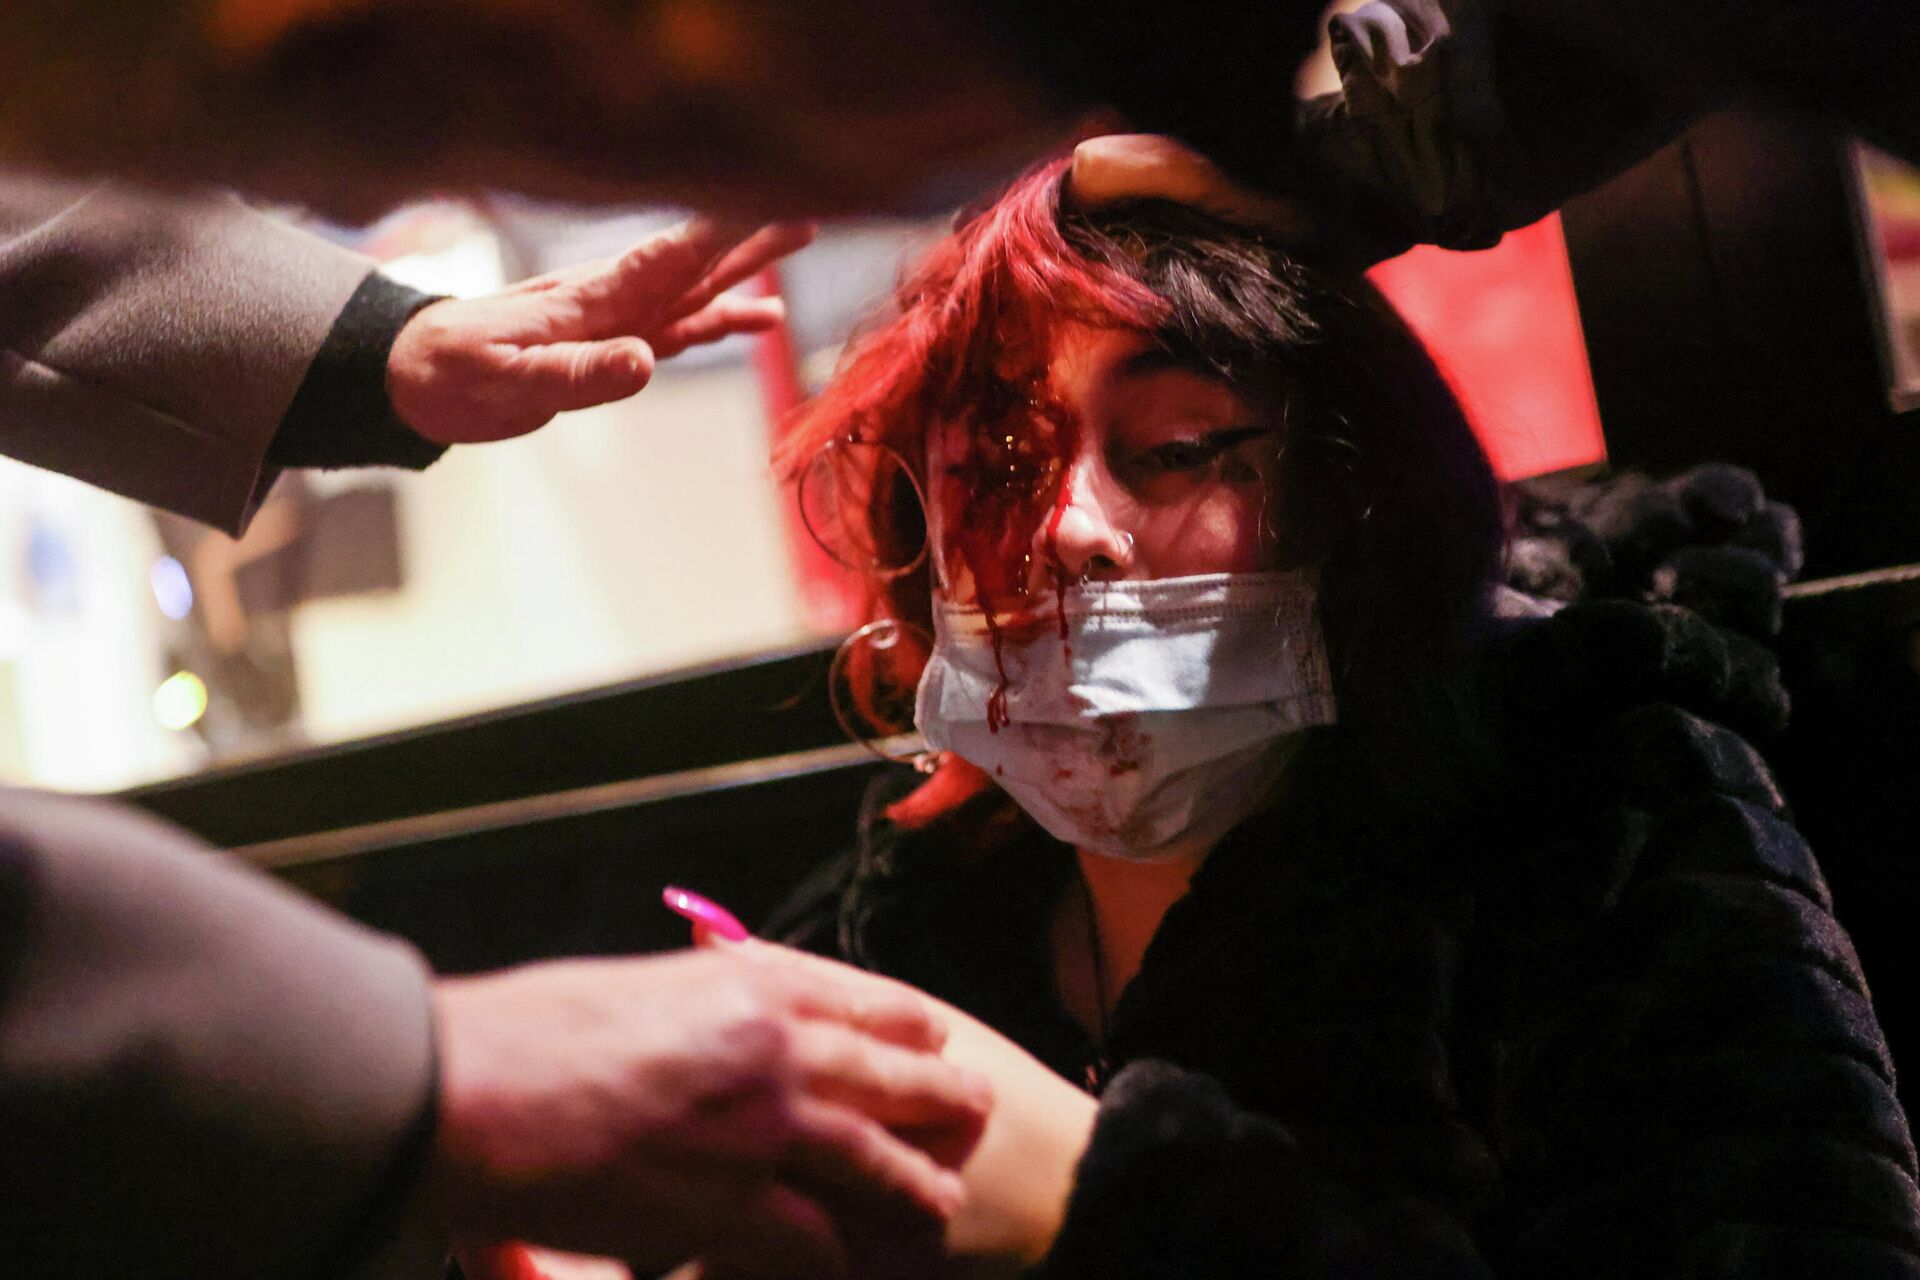 Mujer herida durante los disturbios en Barcelona por la detención del rapero Pablo Hasél - Sputnik Mundo, 1920, 16.02.2021